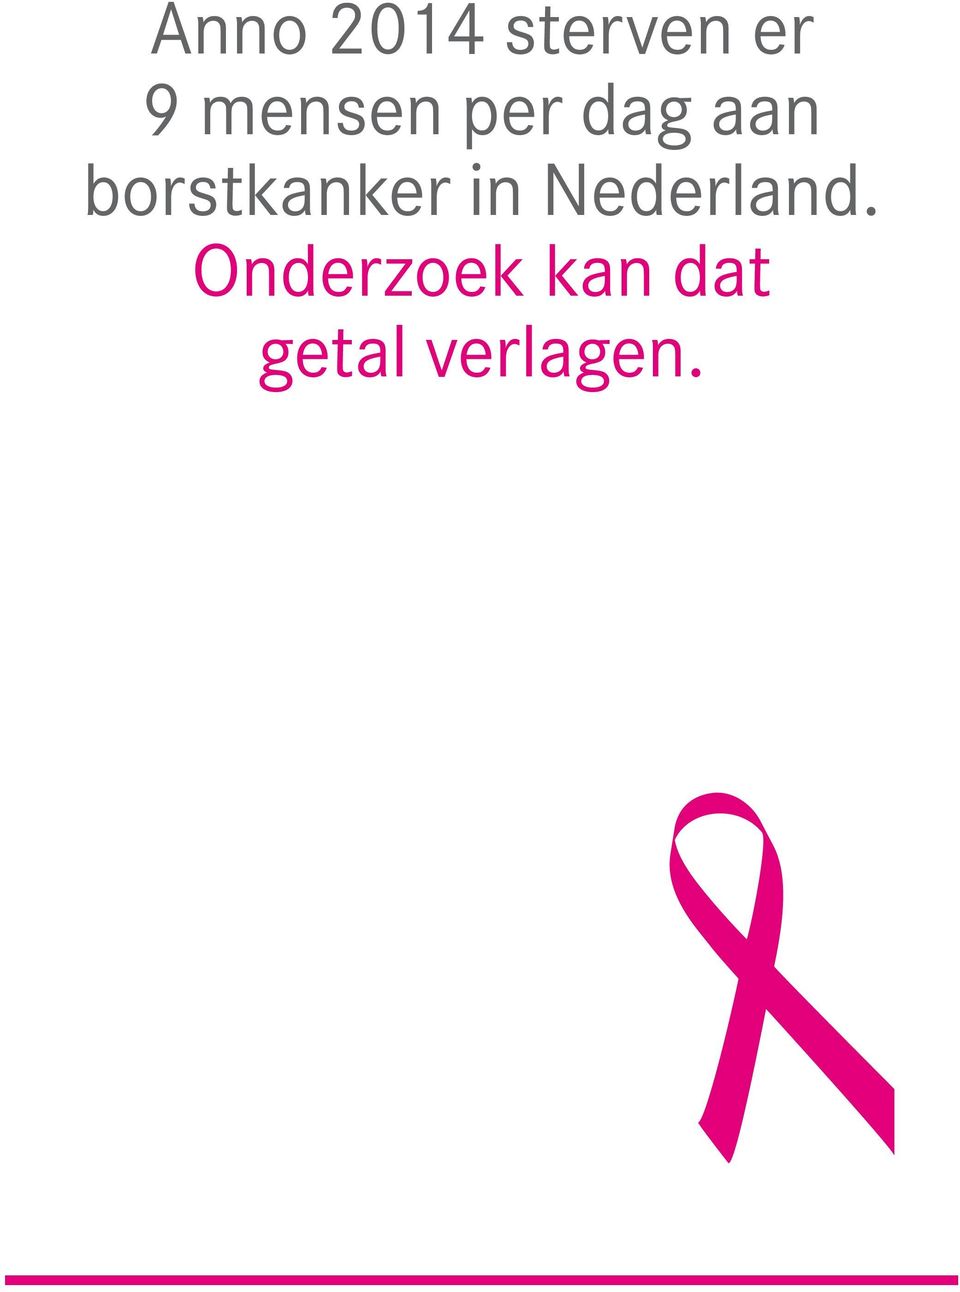 aan borstkanker in Nederland.